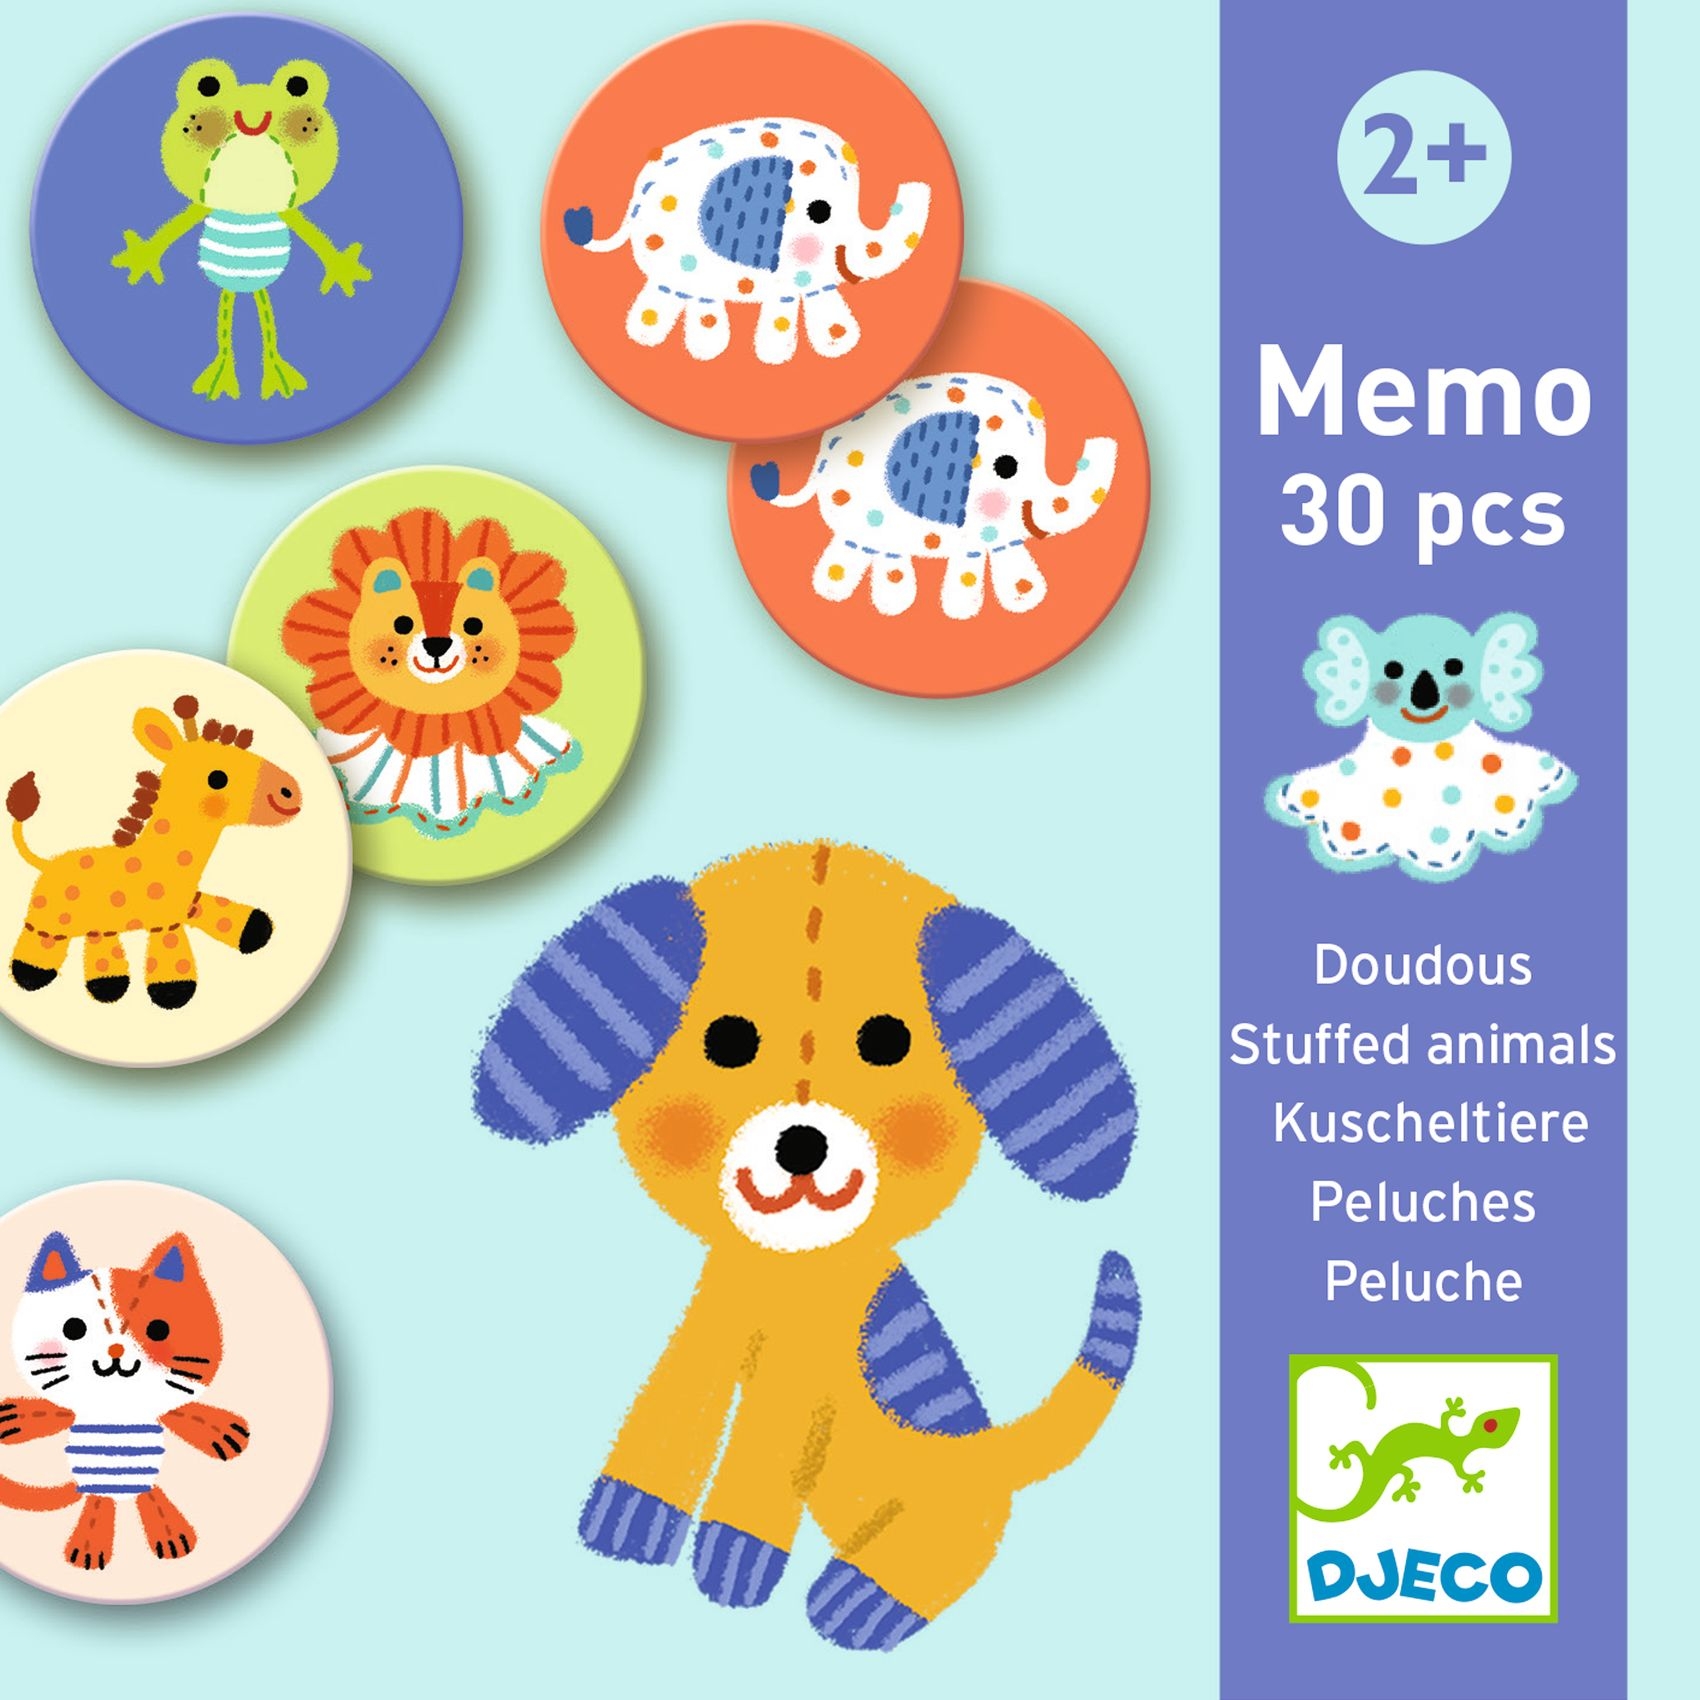 Memória játék - Kedvencek - Memo Stuffed animals - FSC MIX - 2